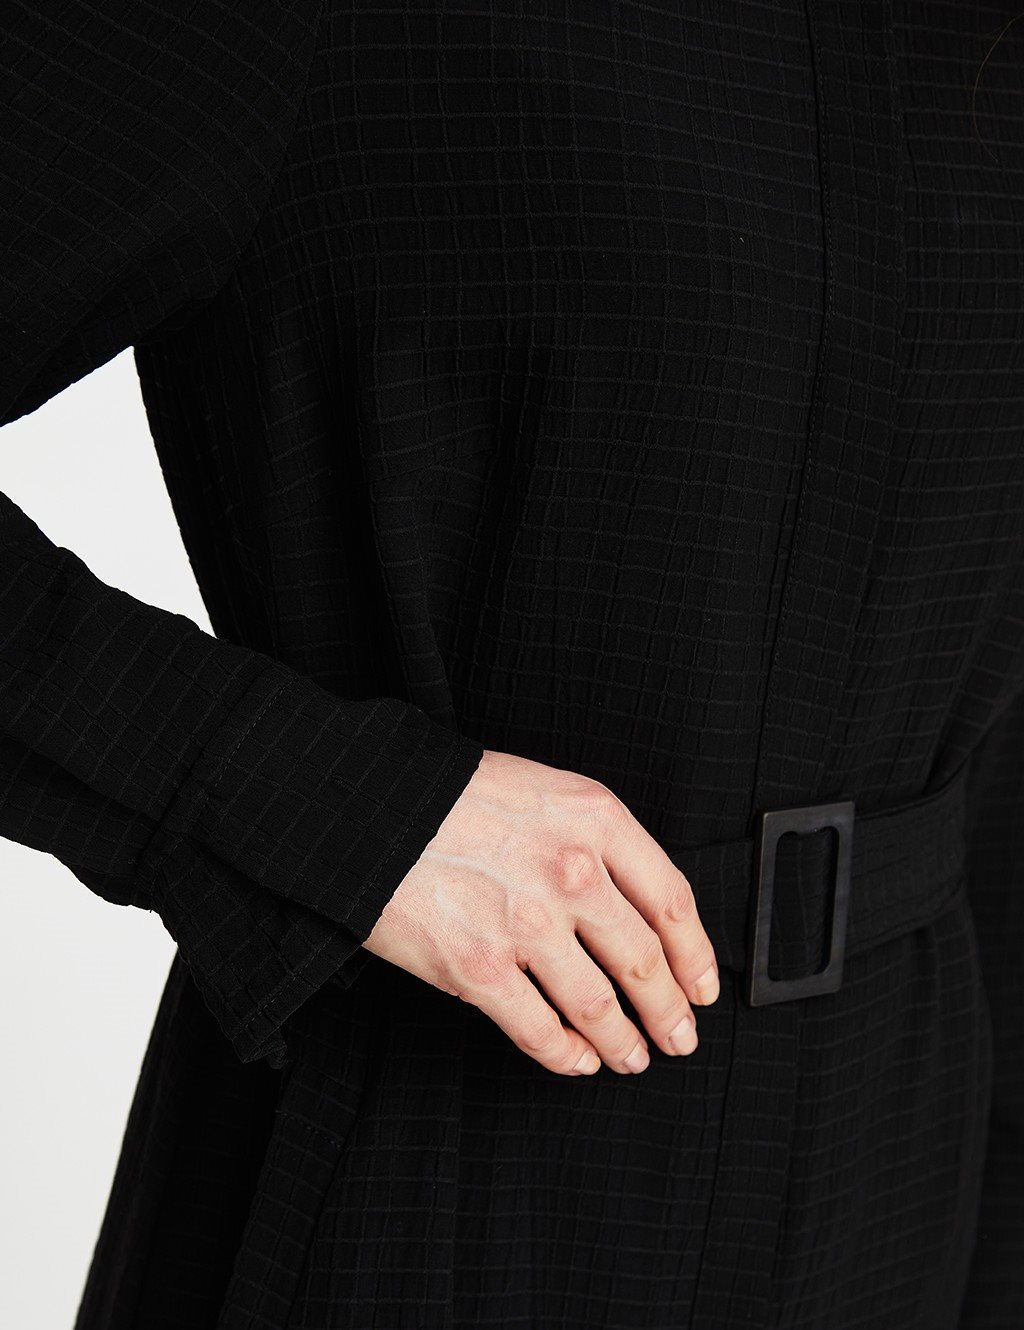 Belted Full Length Dress Black